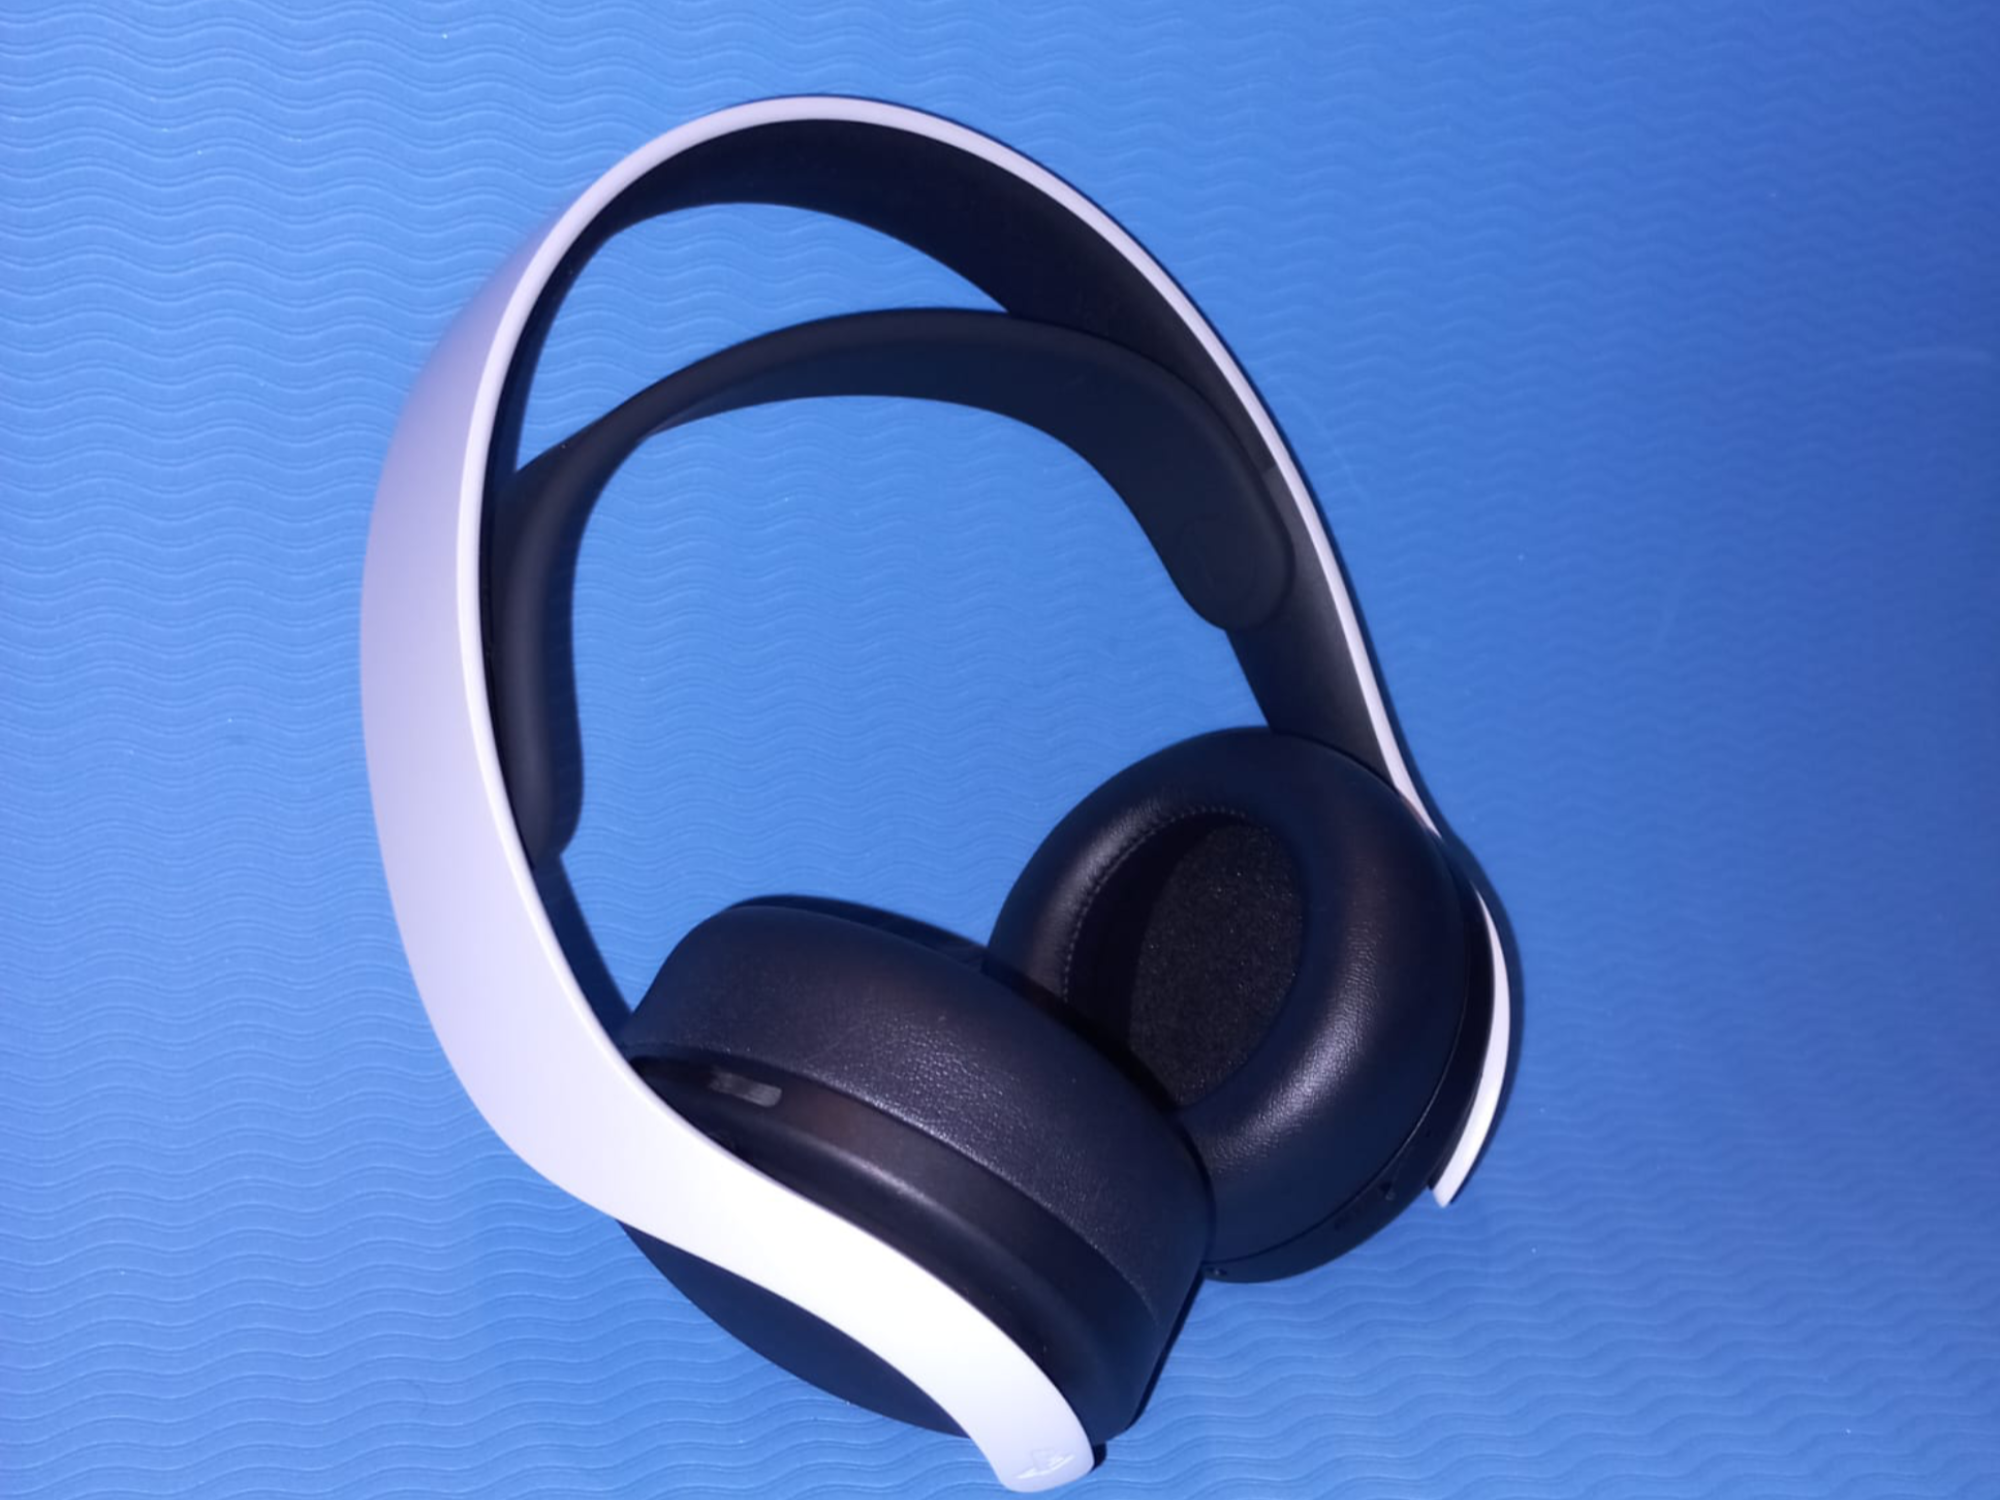 #Sony Pulse 3D Gaming-Headset im Test: Ein Game-Changer in Sachen Sound?